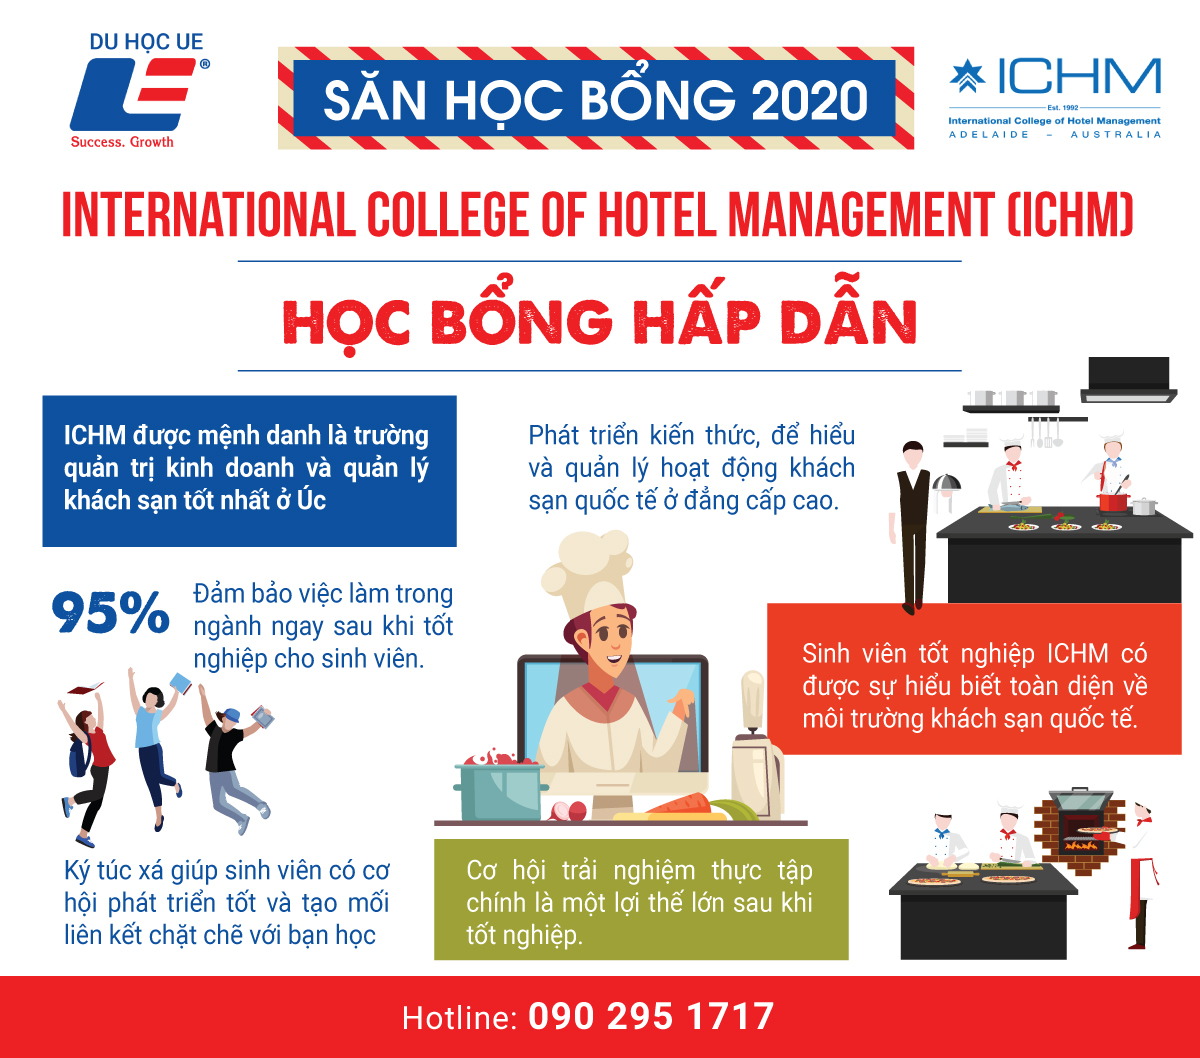 Học bổng trường đào tạo hot nhất hiện nay tại Úc - International College Of Hotel Management (ICHM) dành cho những ai đam mê ngành quản lý nhà hàng khách sạn